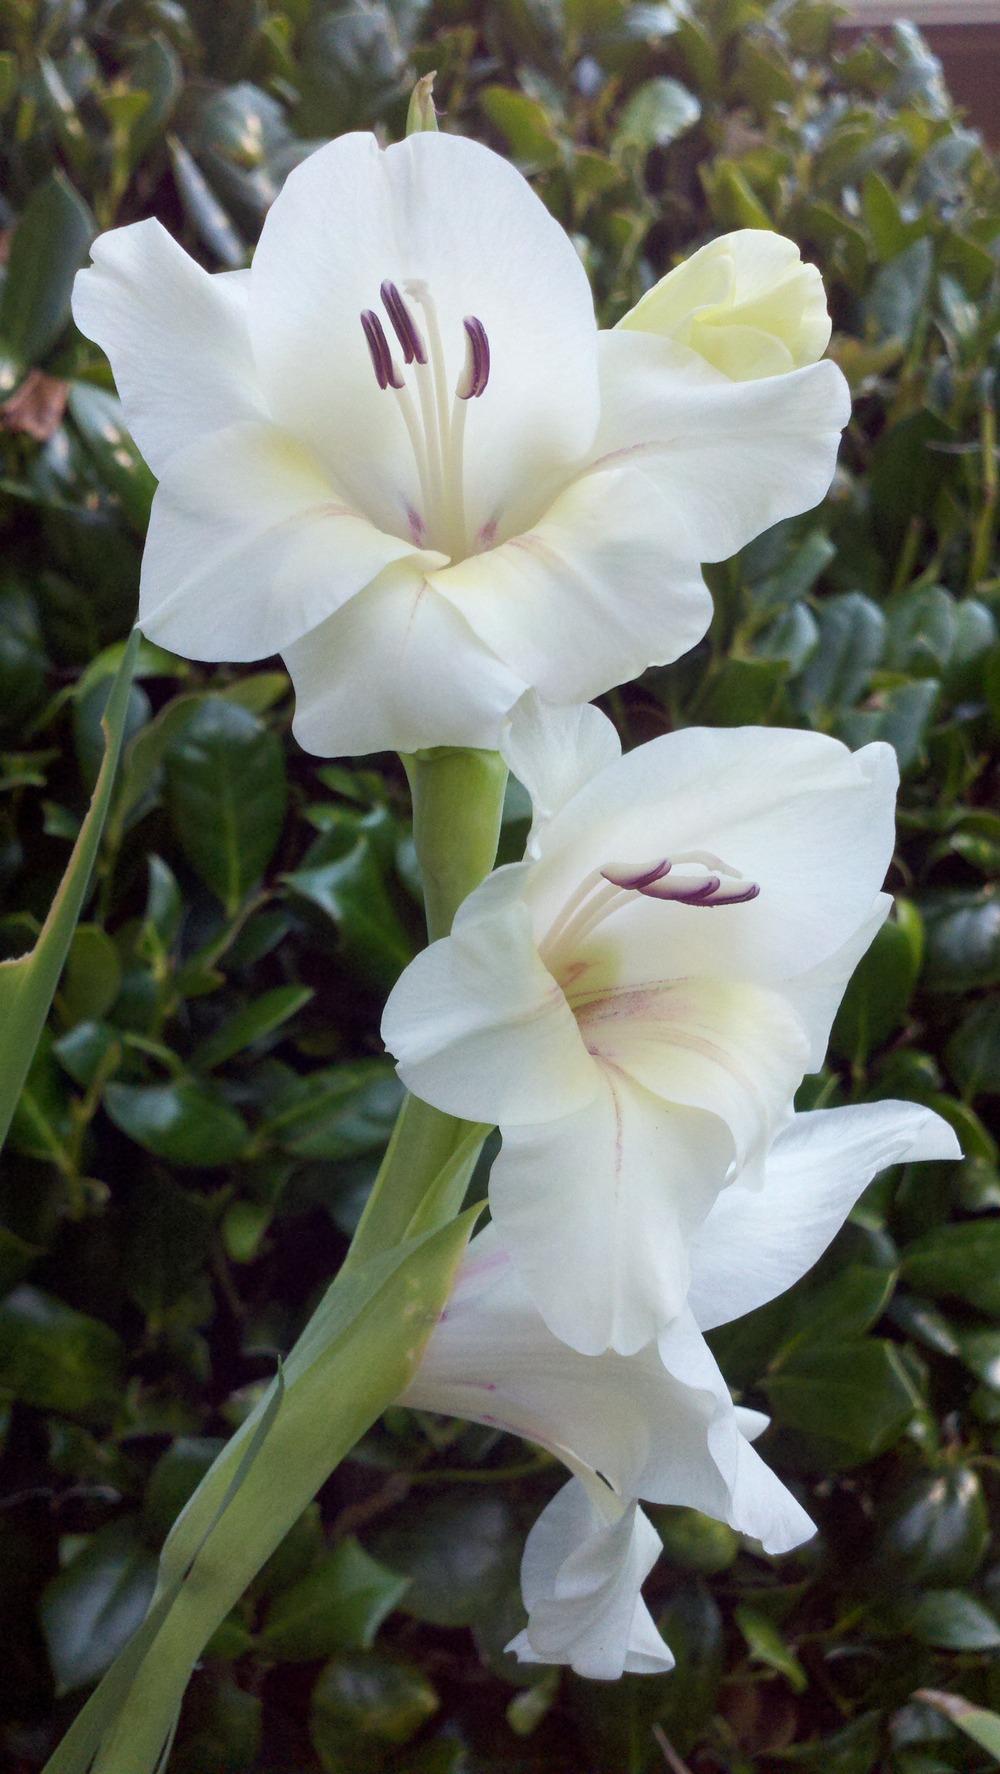 Photo of Gladiola (Gladiolus) uploaded by sarahbugw